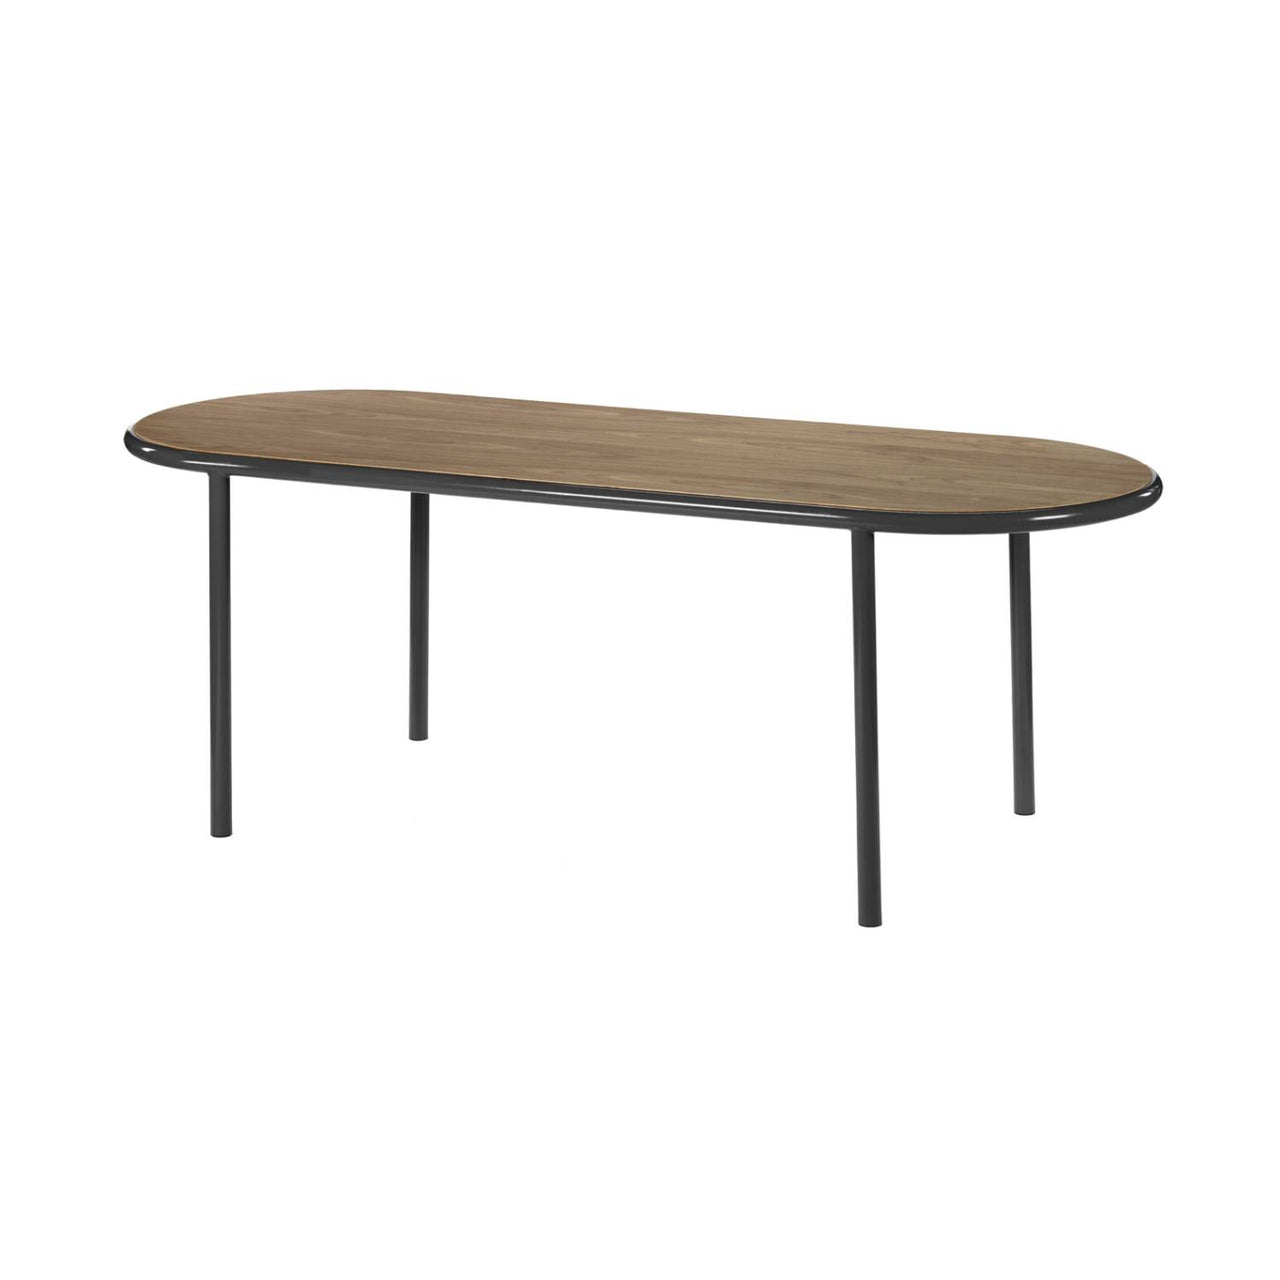 Wooden Table: Oval + Walnut + Black